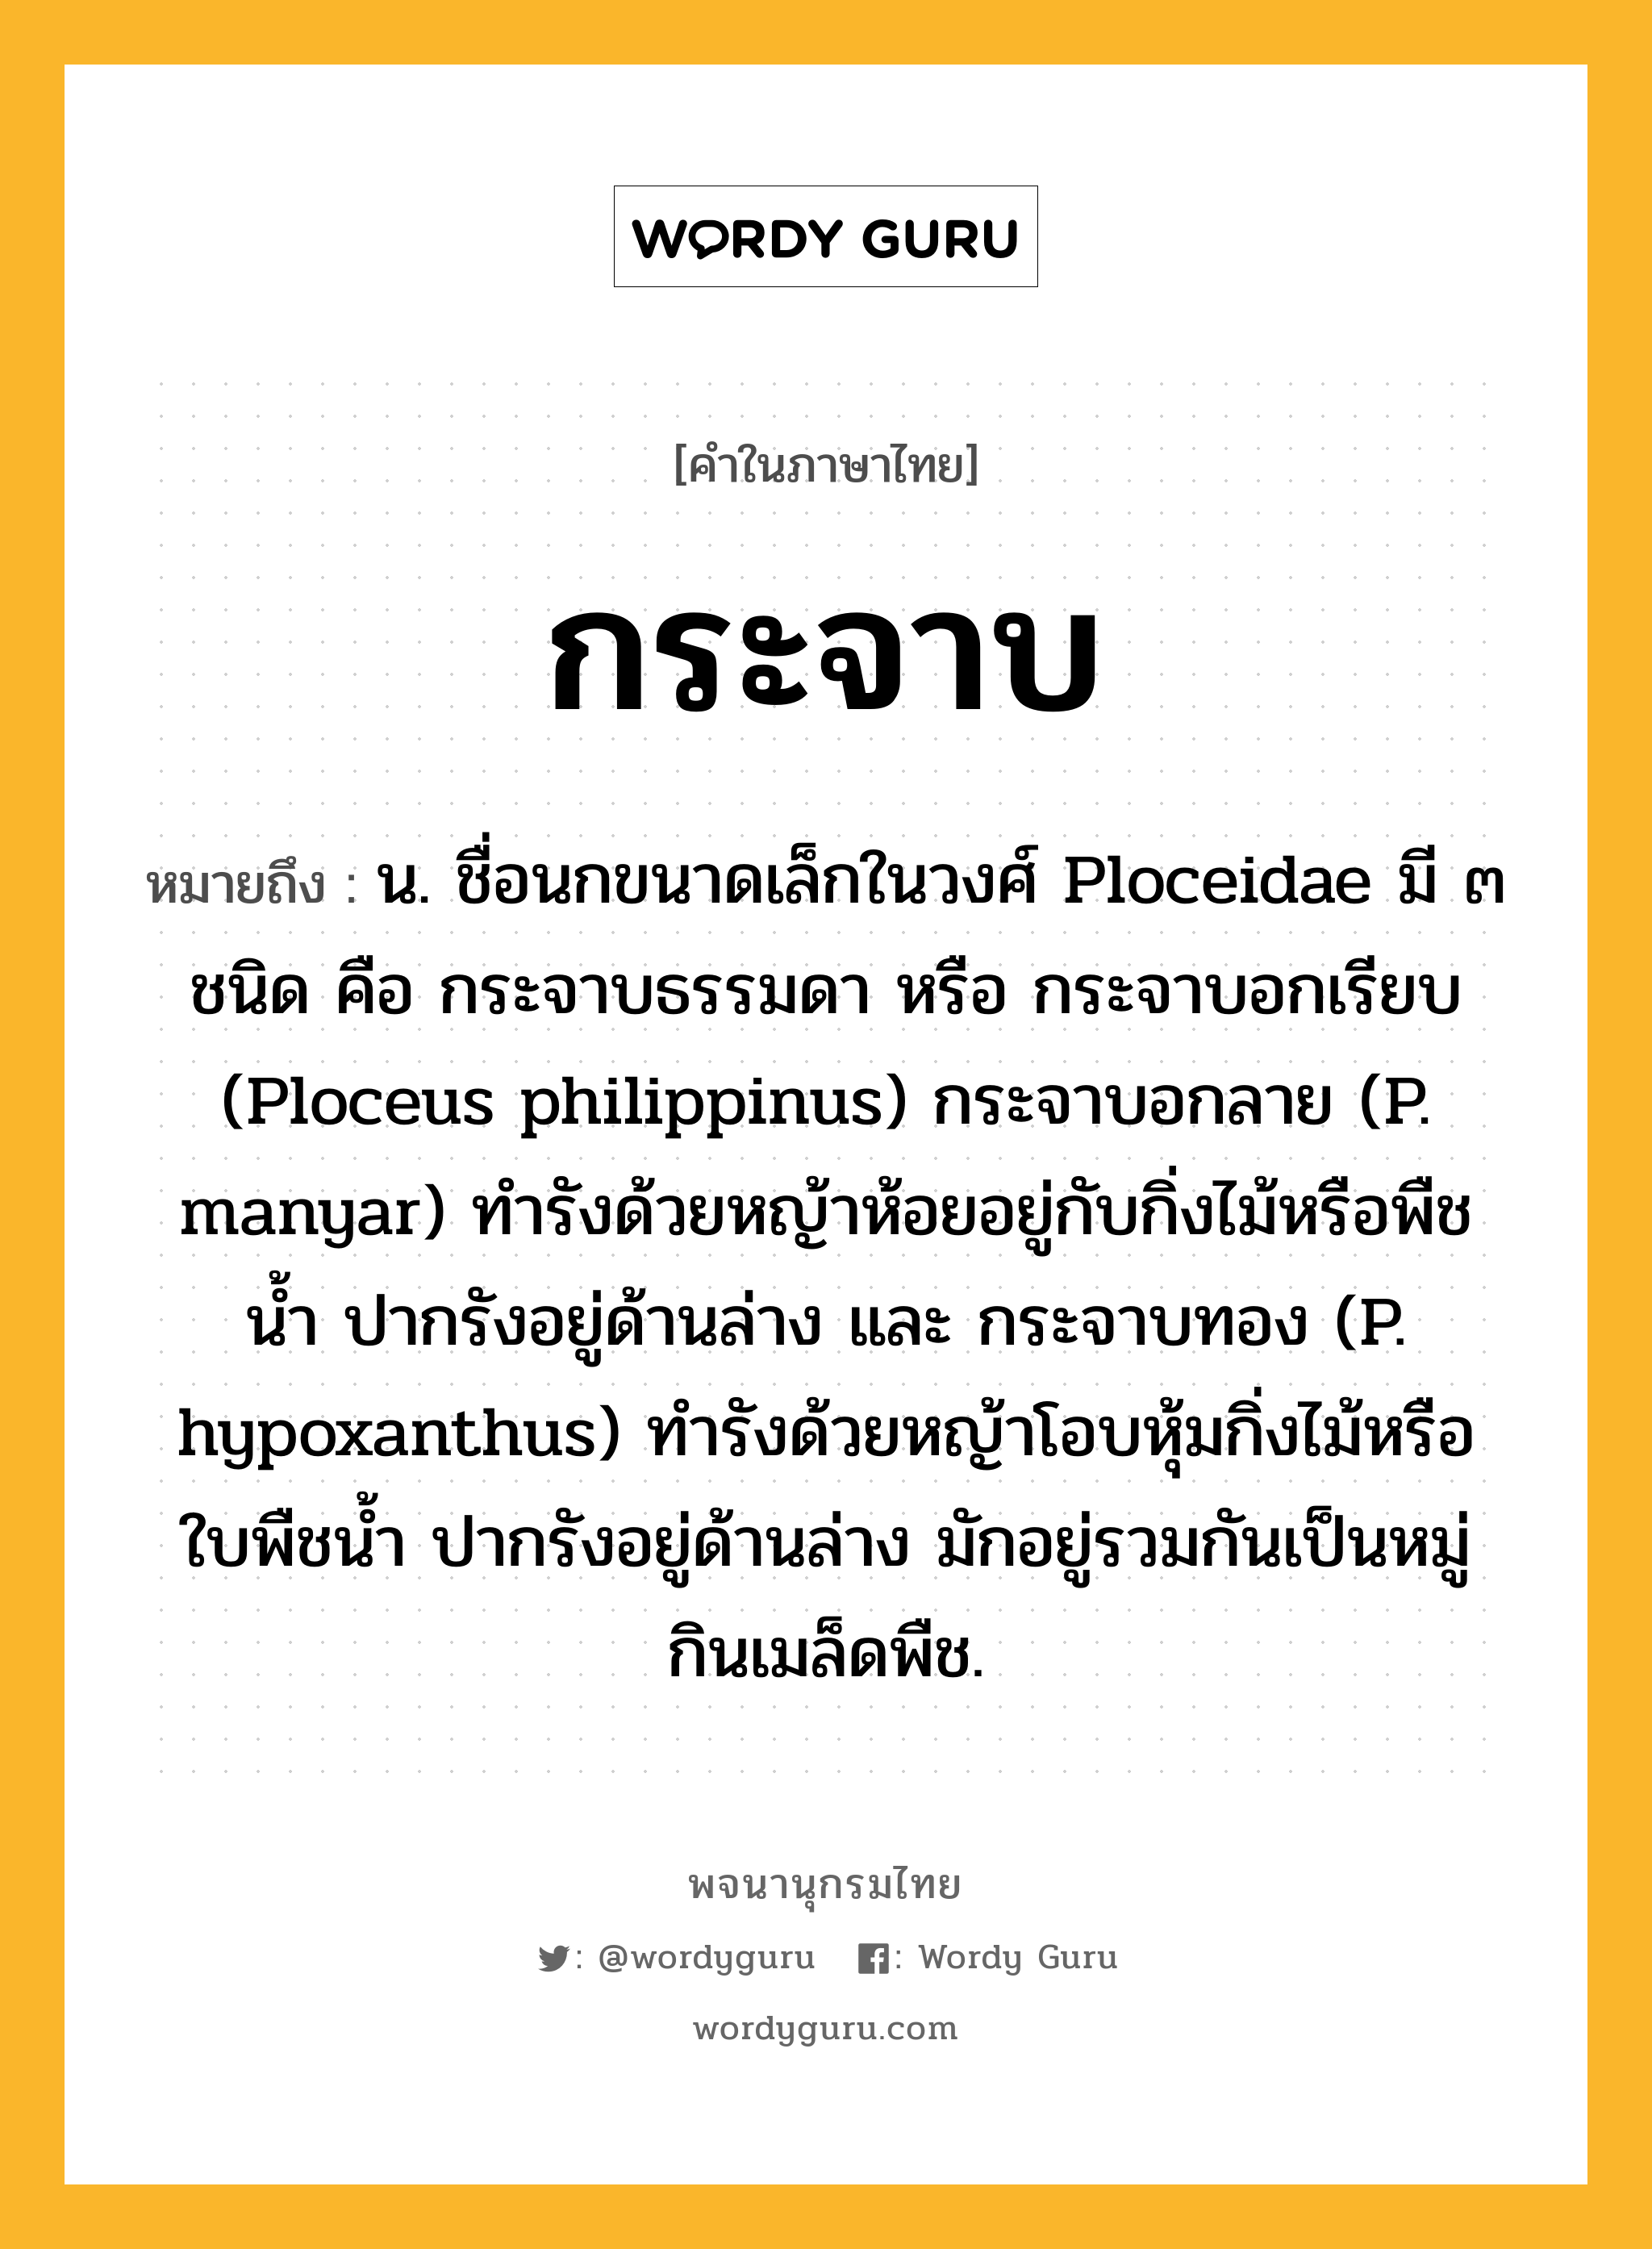 กระจาบ ความหมาย หมายถึงอะไร?, คำในภาษาไทย กระจาบ หมายถึง น. ชื่อนกขนาดเล็กในวงศ์ Ploceidae มี ๓ ชนิด คือ กระจาบธรรมดา หรือ กระจาบอกเรียบ (Ploceus philippinus) กระจาบอกลาย (P. manyar) ทำรังด้วยหญ้าห้อยอยู่กับกิ่งไม้หรือพืชน้ำ ปากรังอยู่ด้านล่าง และ กระจาบทอง (P. hypoxanthus) ทํารังด้วยหญ้าโอบหุ้มกิ่งไม้หรือใบพืชน้ำ ปากรังอยู่ด้านล่าง มักอยู่รวมกันเป็นหมู่ กินเมล็ดพืช.